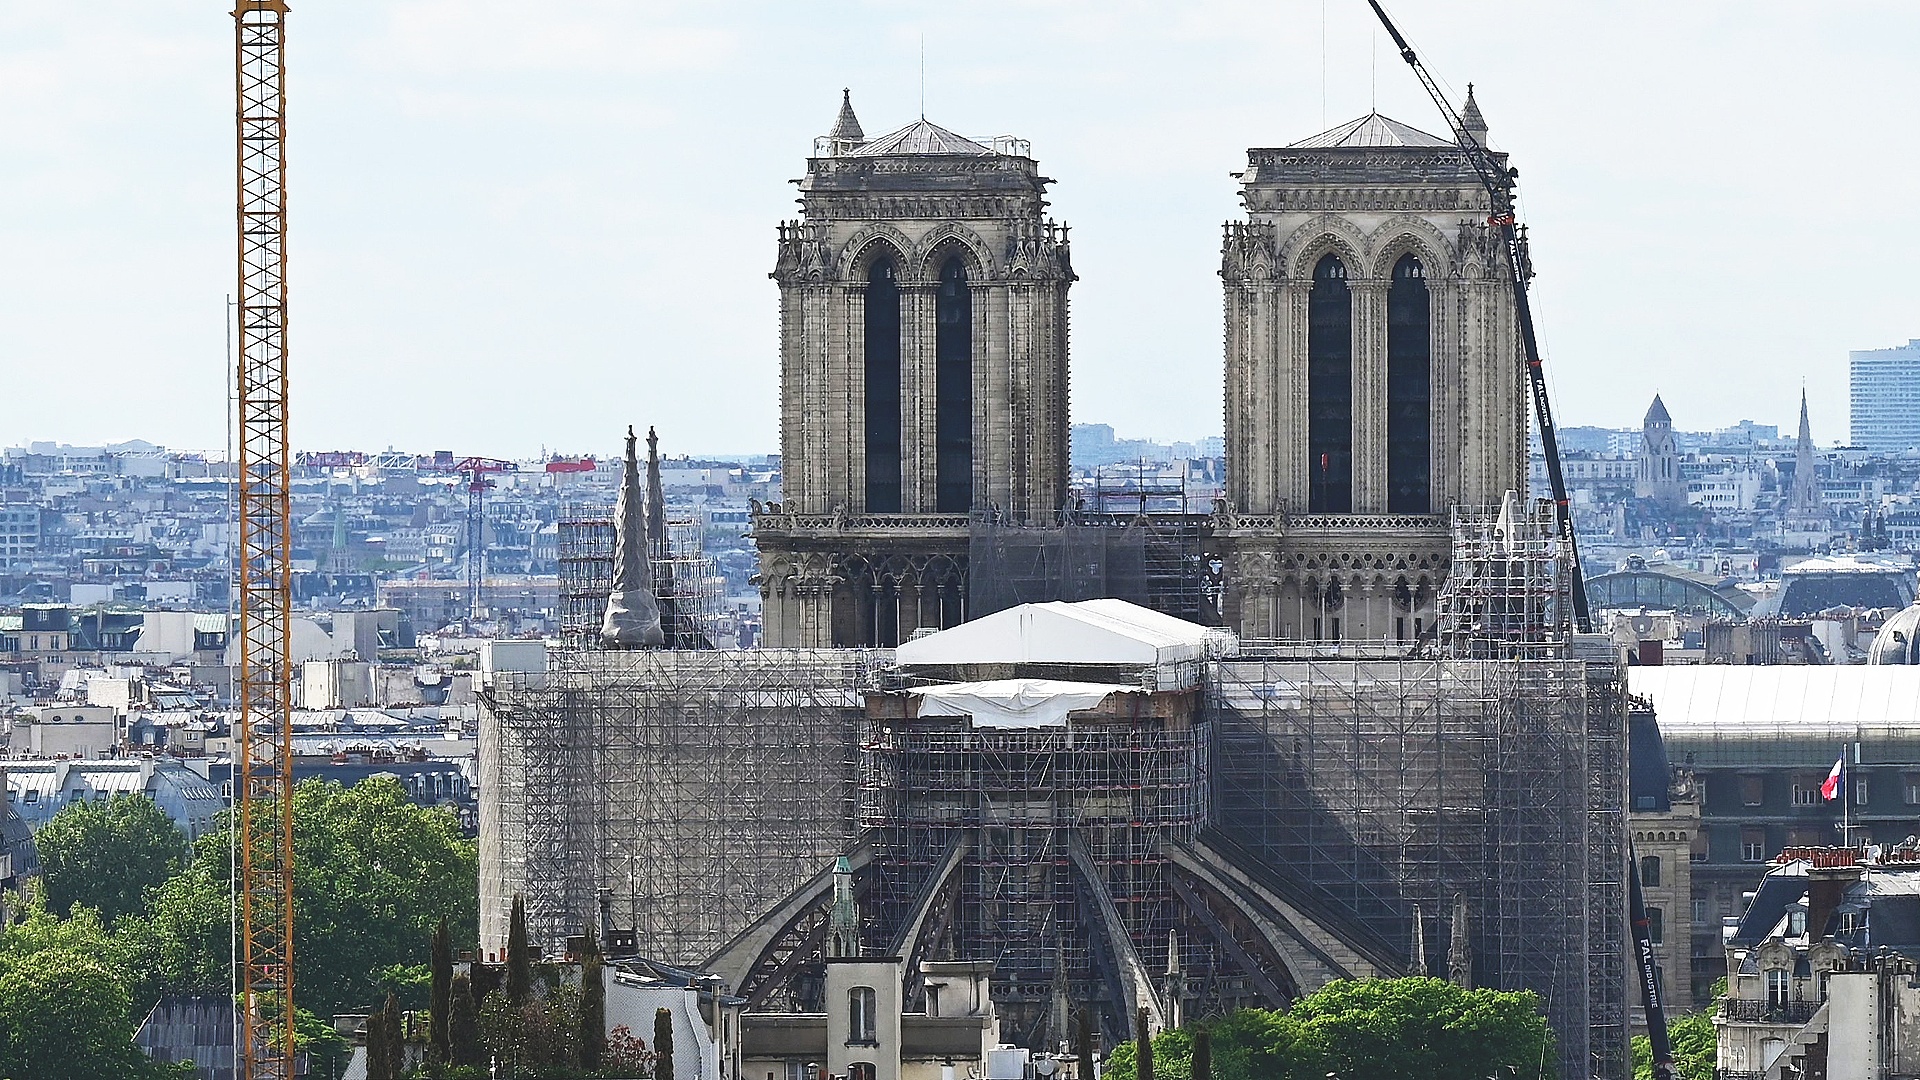 Собор Парижской Богоматери обещают открыть в 2024 году